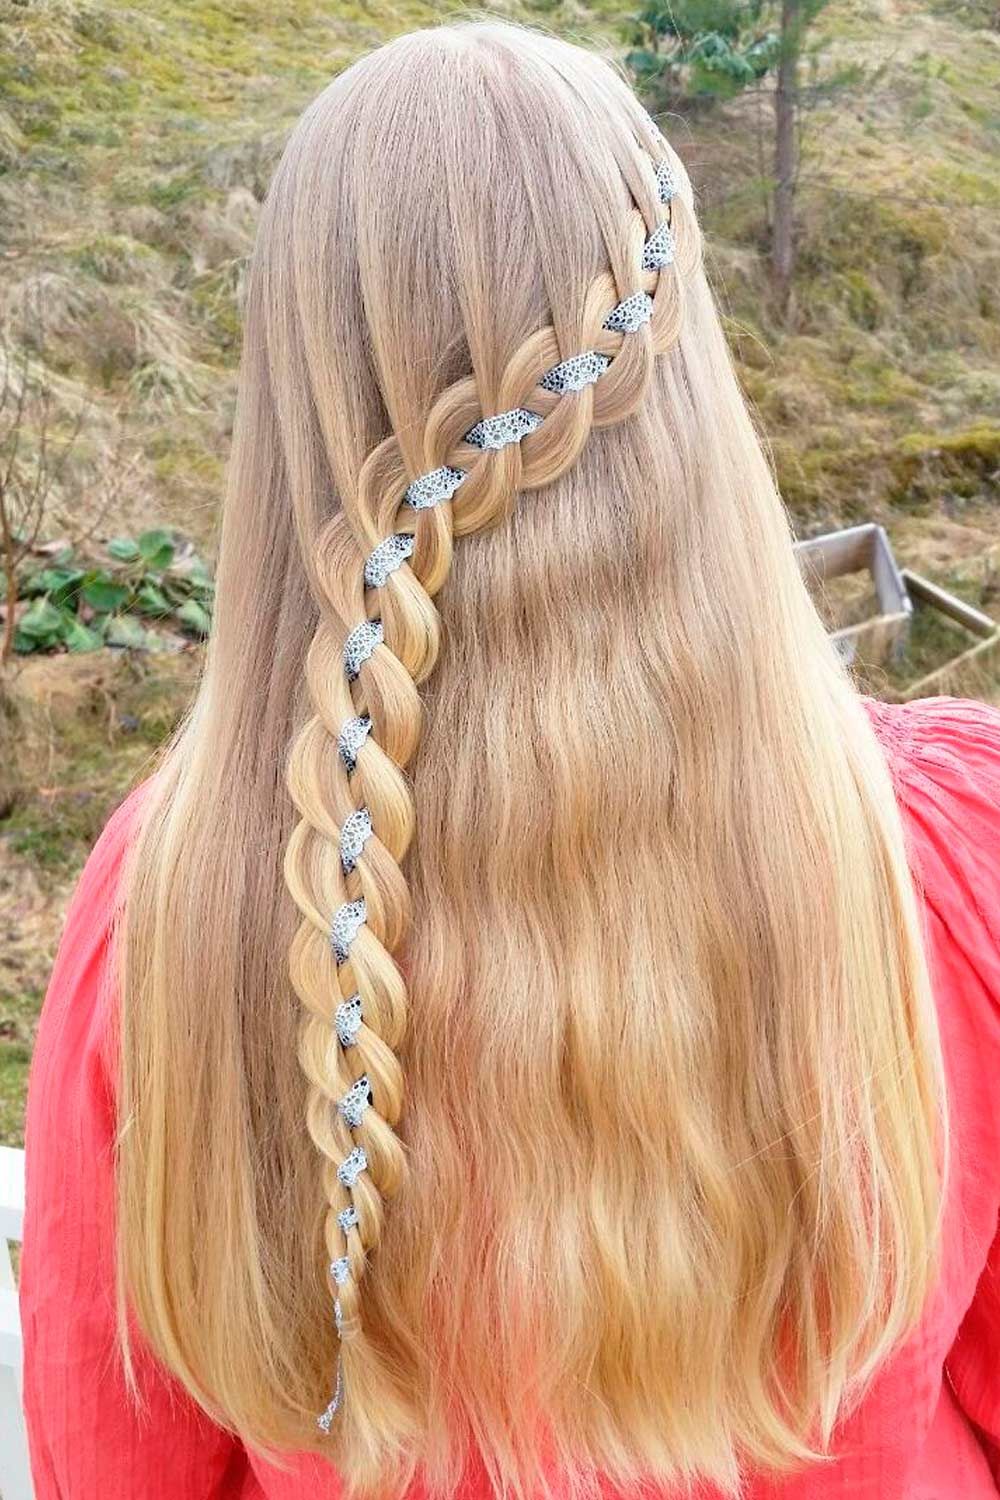 1960s hippie braided hairstyles